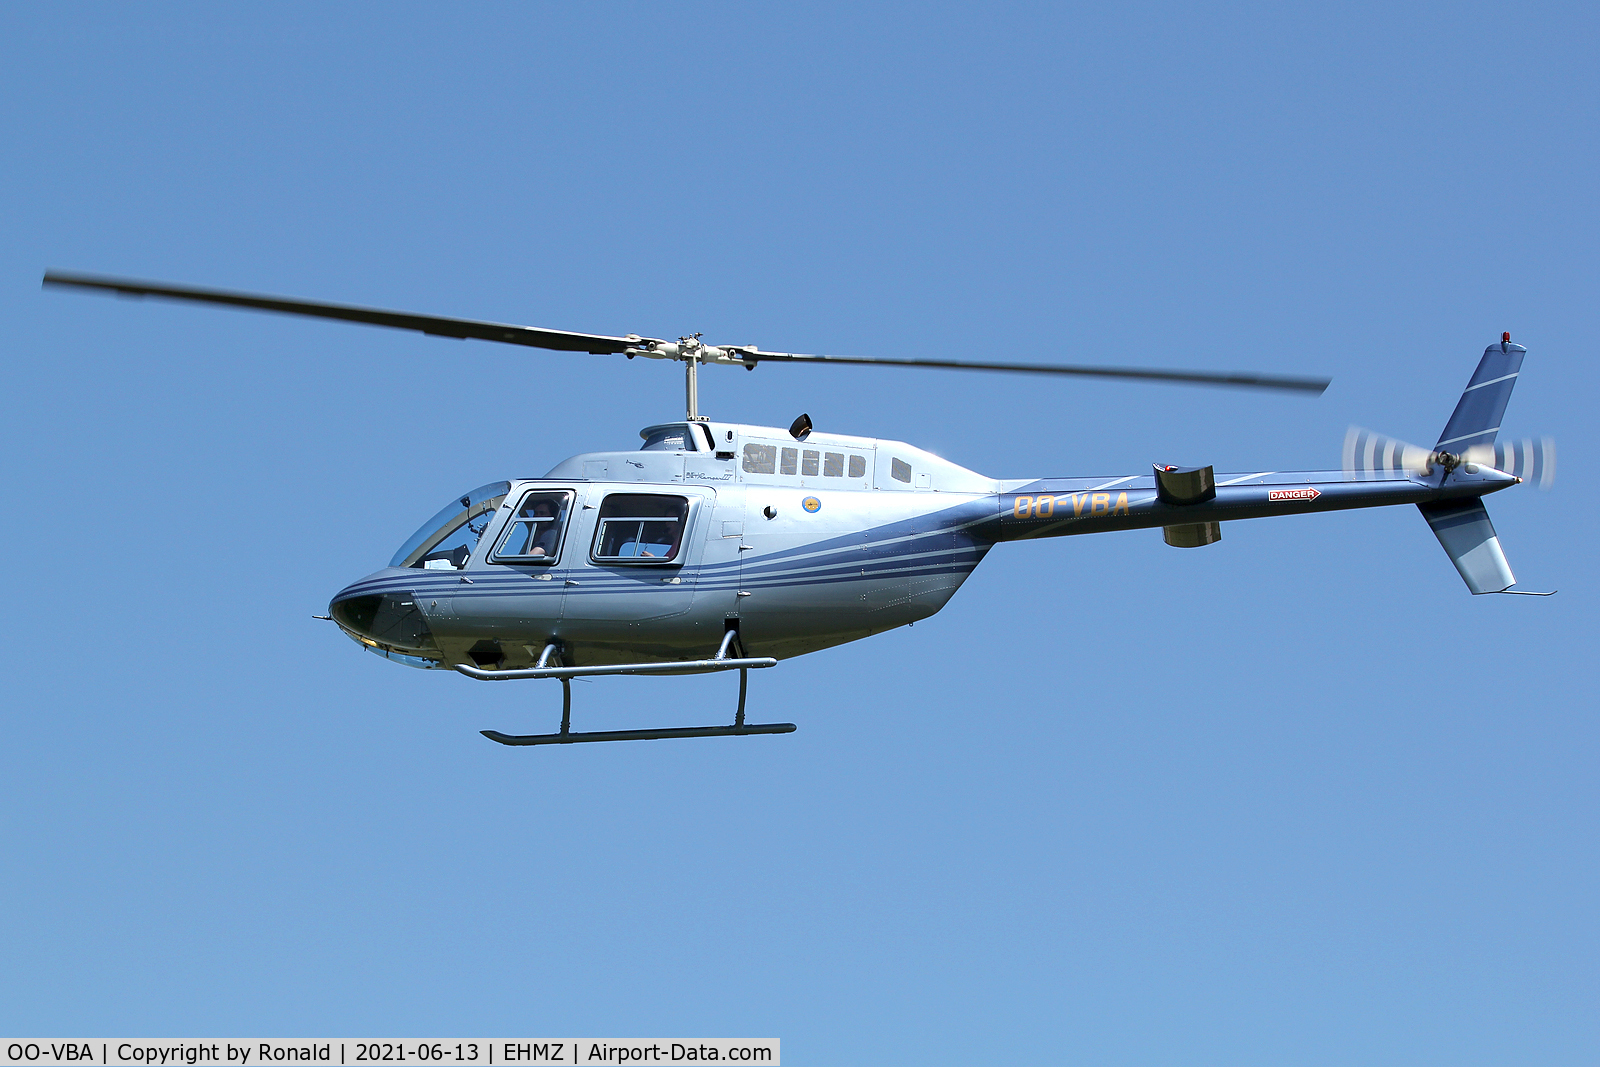 OO-VBA, 2000 Bell 206B C/N 4535, at ehmz